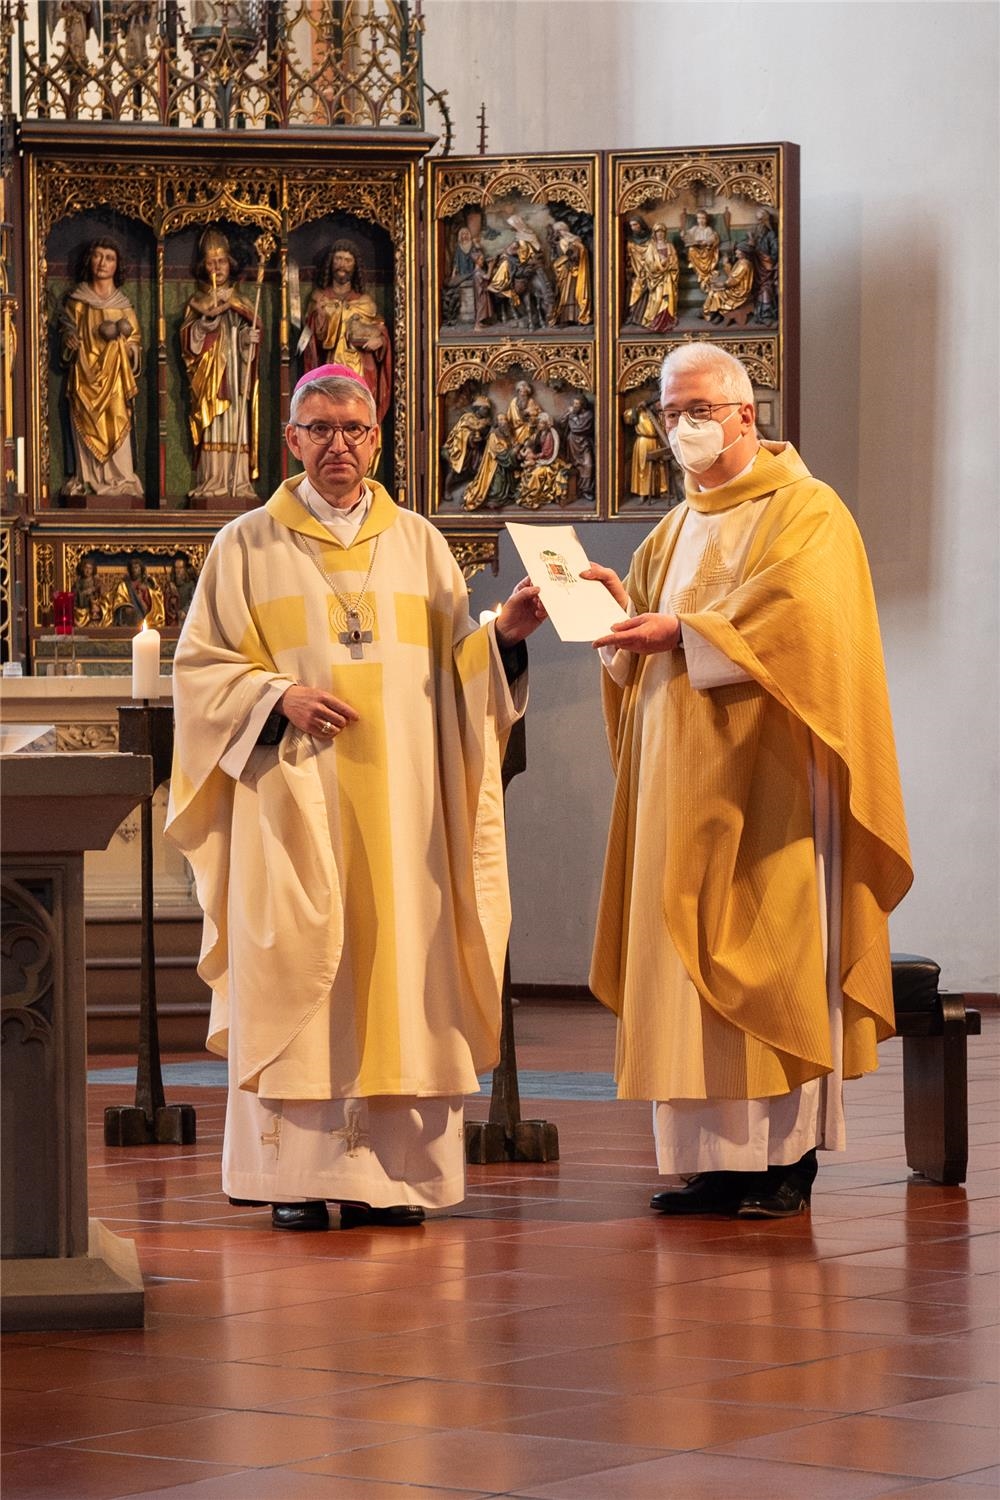 Bischof übergibt Urkunde an Priester (Quelle: Anja Schaal )